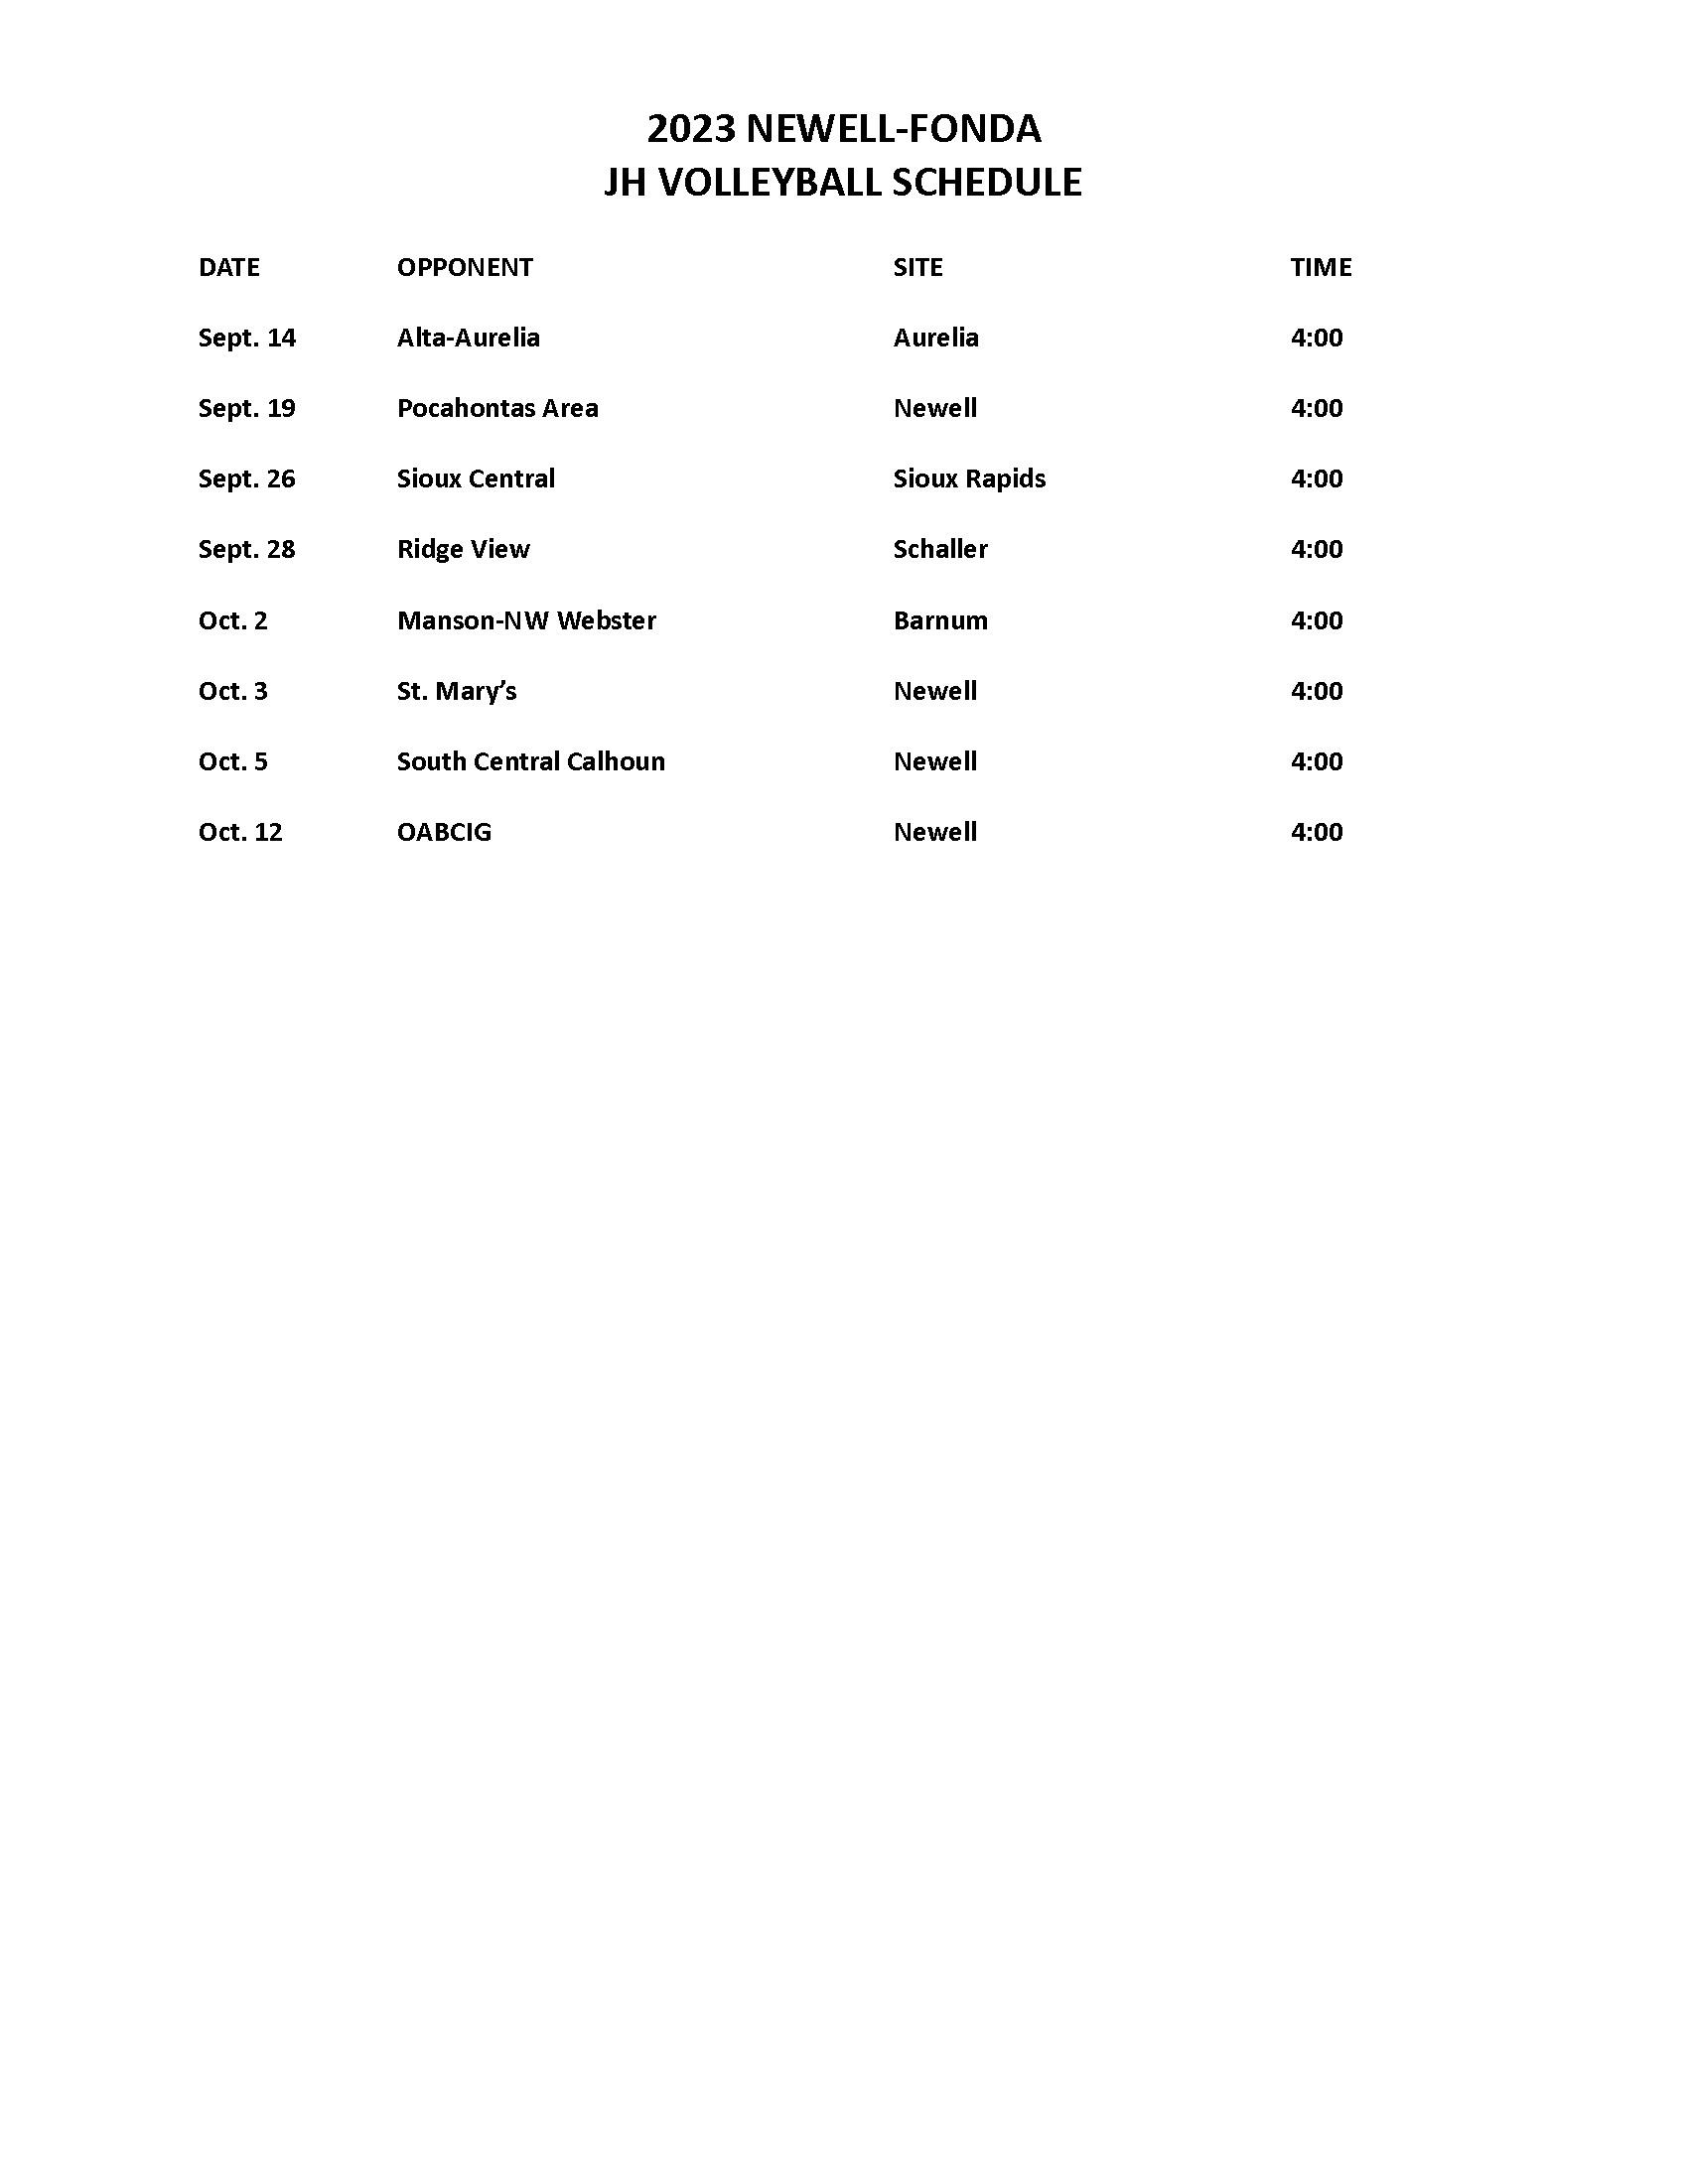 JV Volleyball Schedule 2023